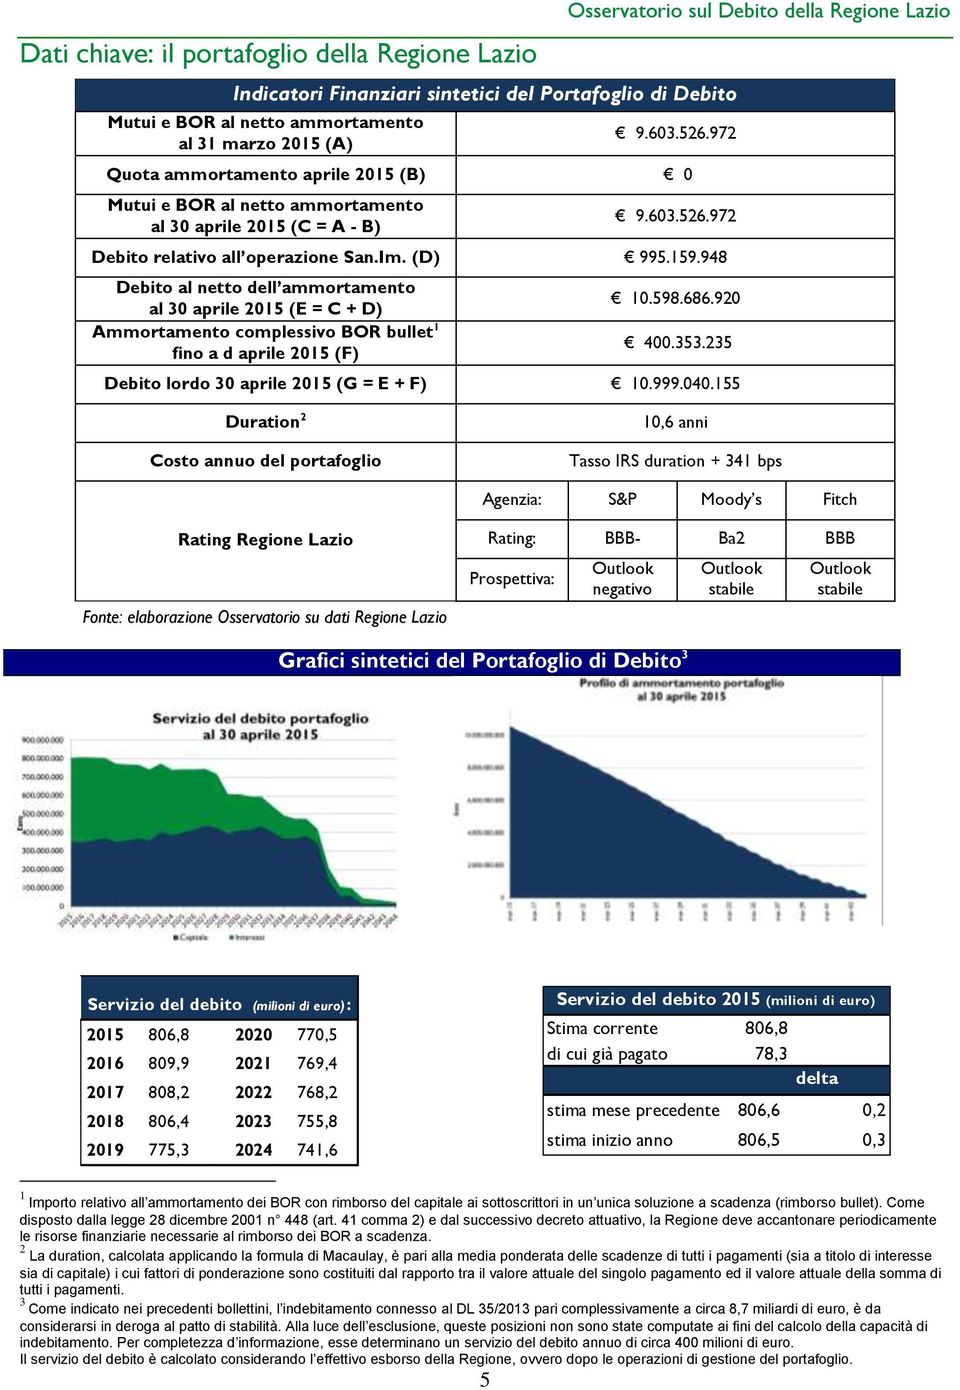 948 Debito al netto dell ammortamento al 30 aprile 2015 (E = C + D) Ammortamento complessivo BOR bullet 1 fino a d aprile 2015 (F) 10.598.686.920 400.353.